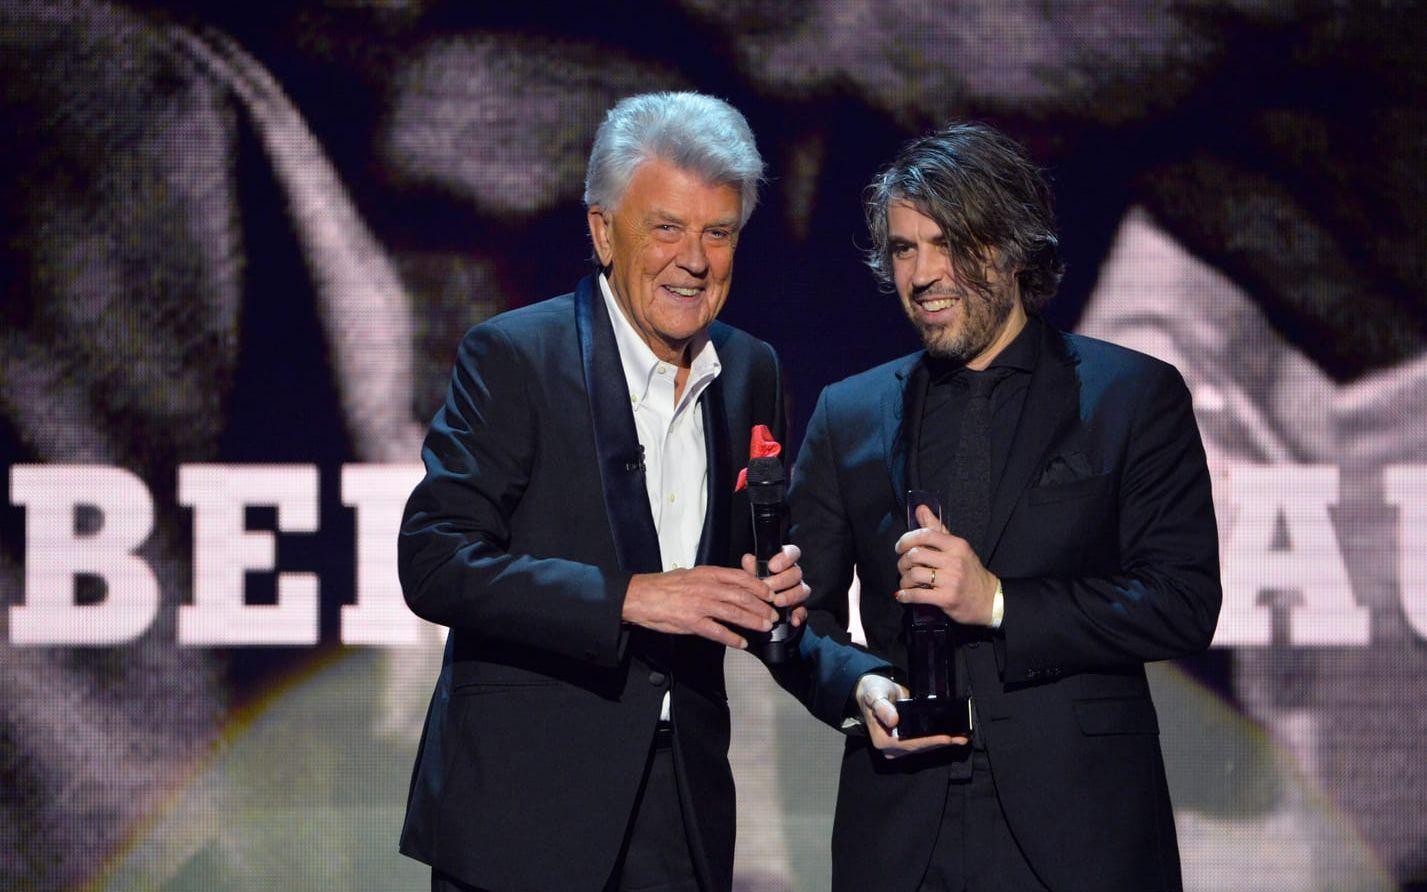 Peter Nordahl och Sven Bertil Taube prisades i kategorin Årets Folkmusik under Grammisgalan 2015.